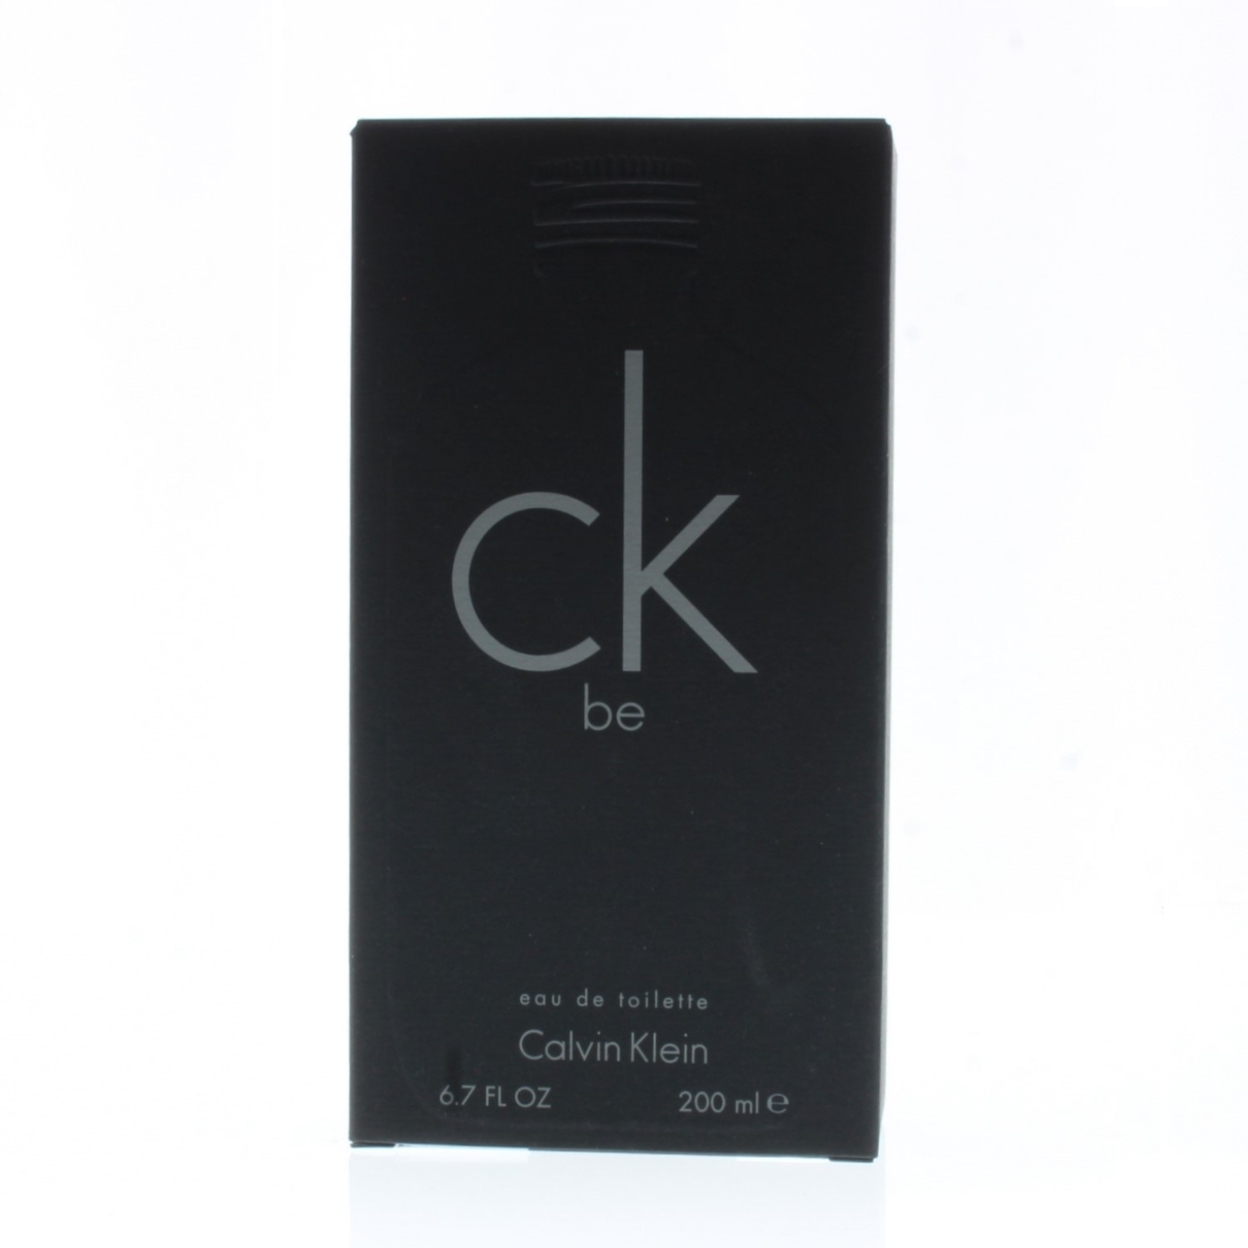 Calvin Klein Ck Be Eau De Toilette for Men 6.7oz/200ml - image 1 of 3